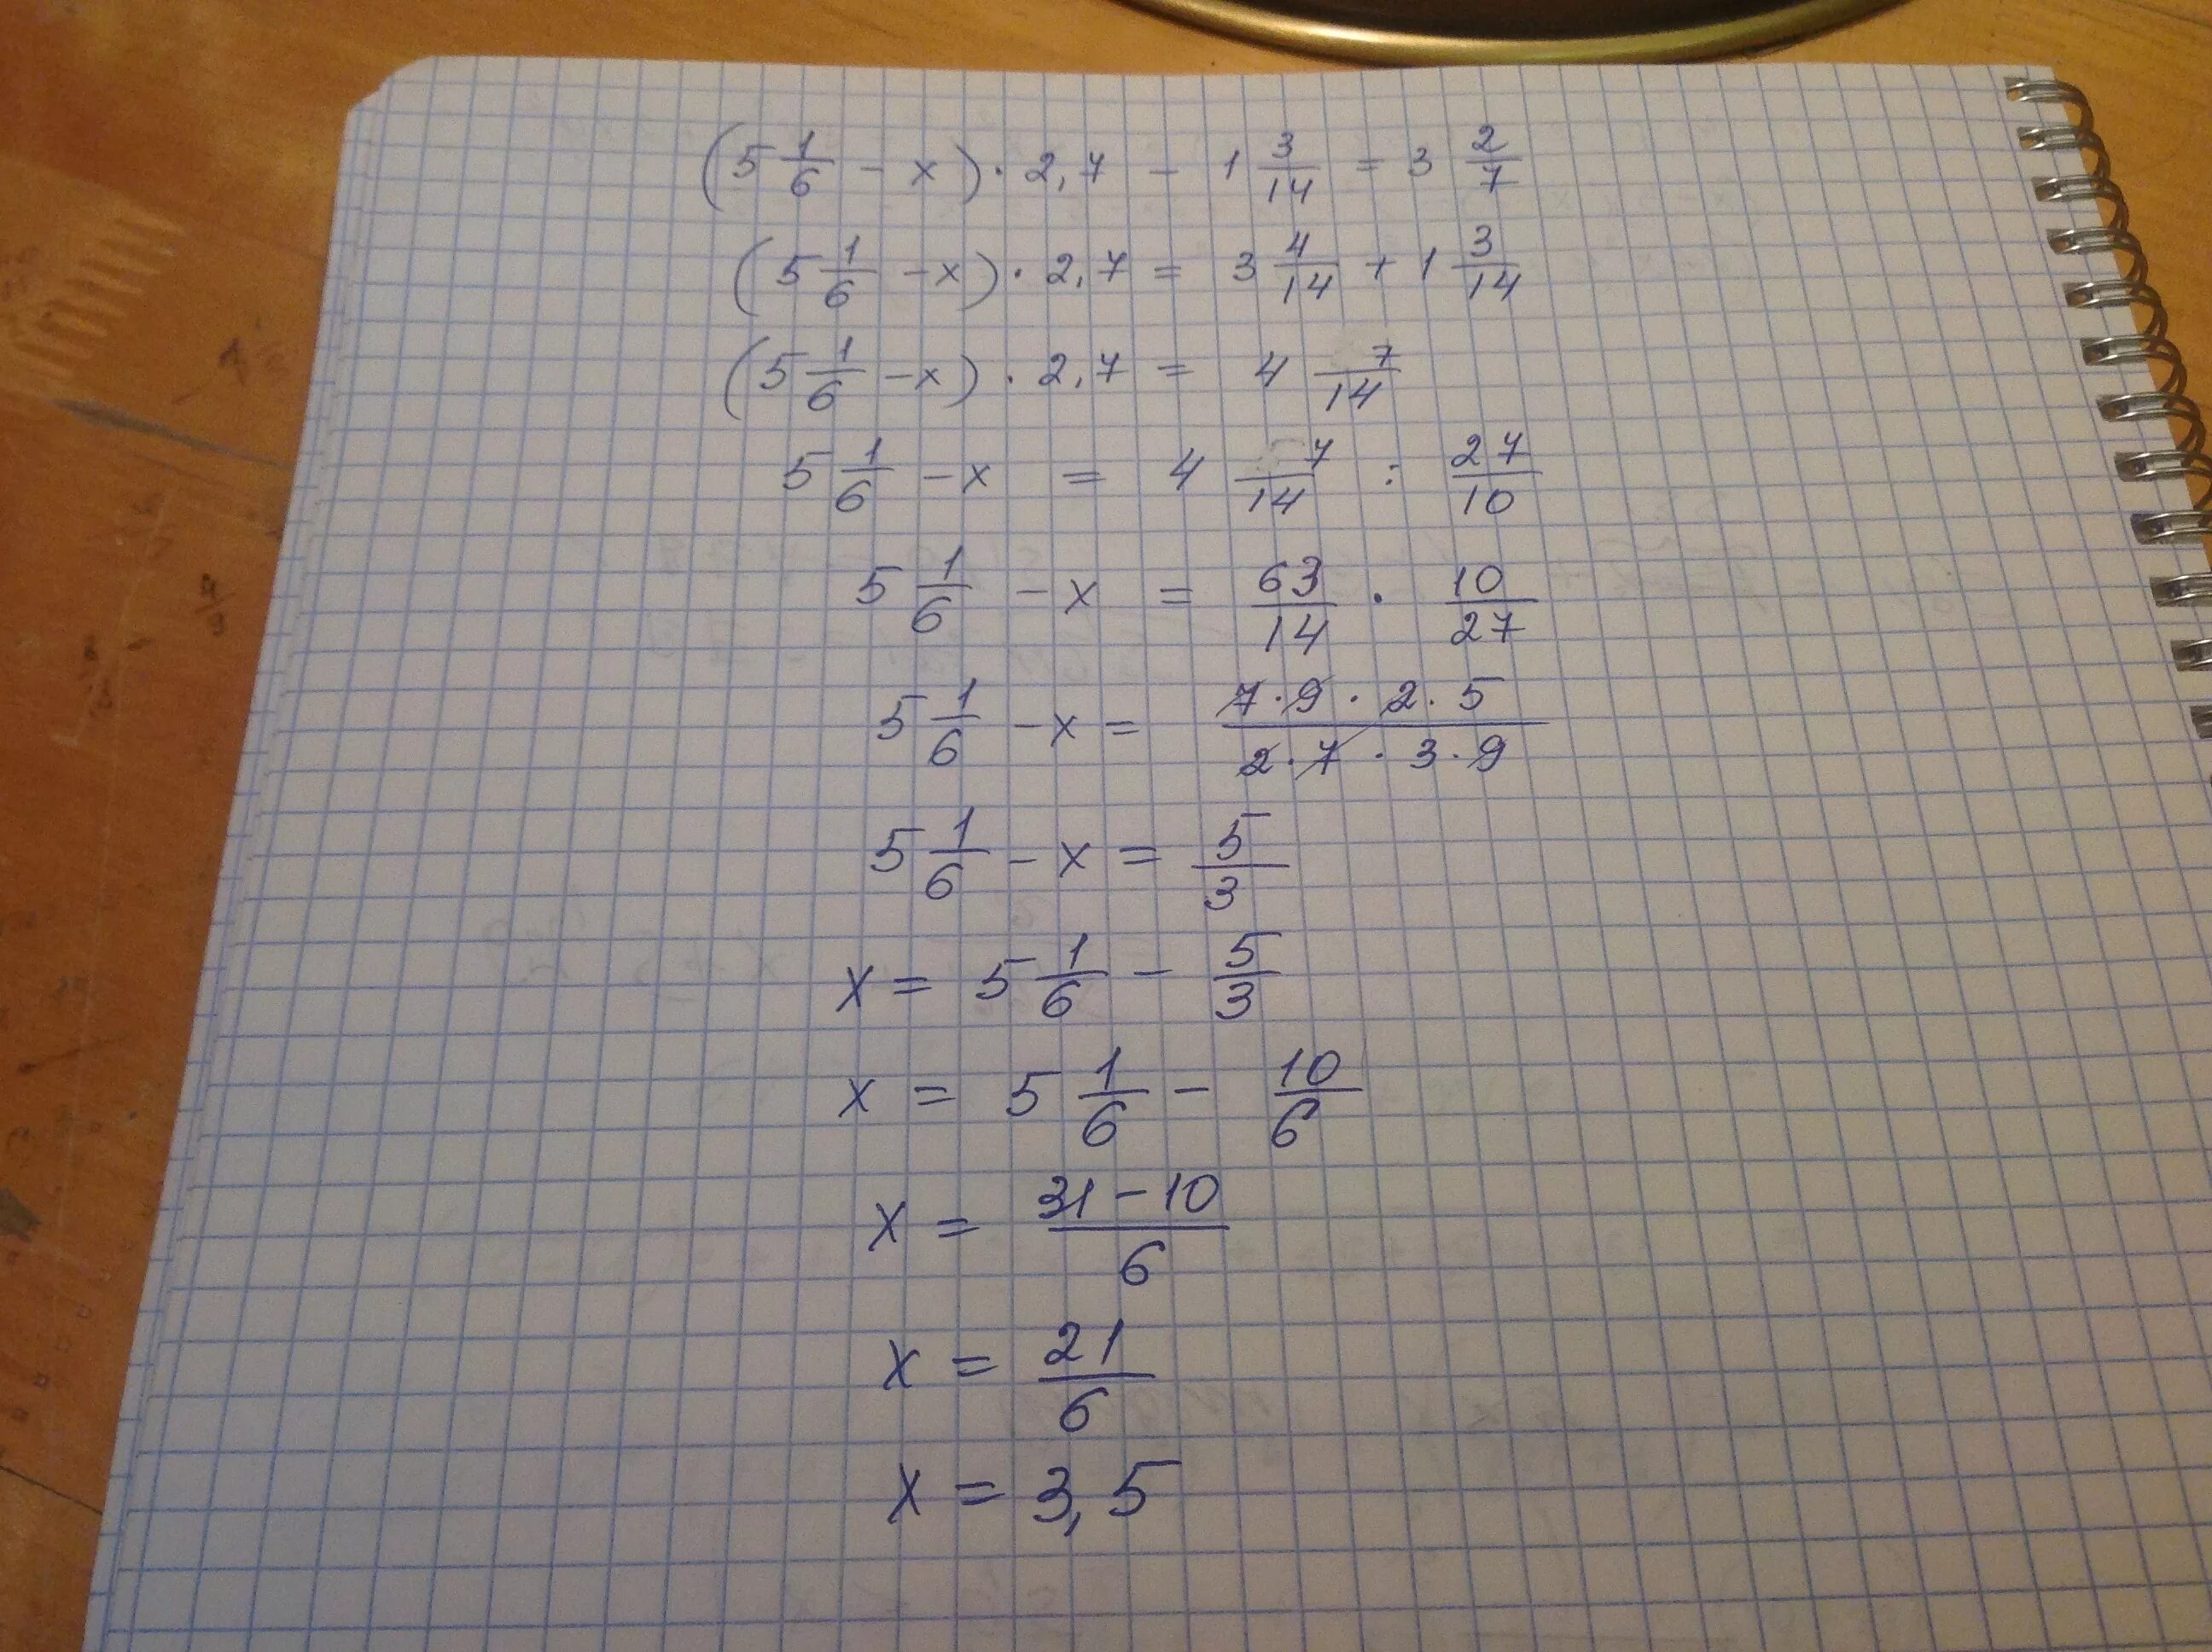 2/X-3=7/X+1. X-2/3=3x+1/7. 3,5/√1-X=1 1/6. 5-2(1-Х)=7x+6. 1 7x 3 14 3 5